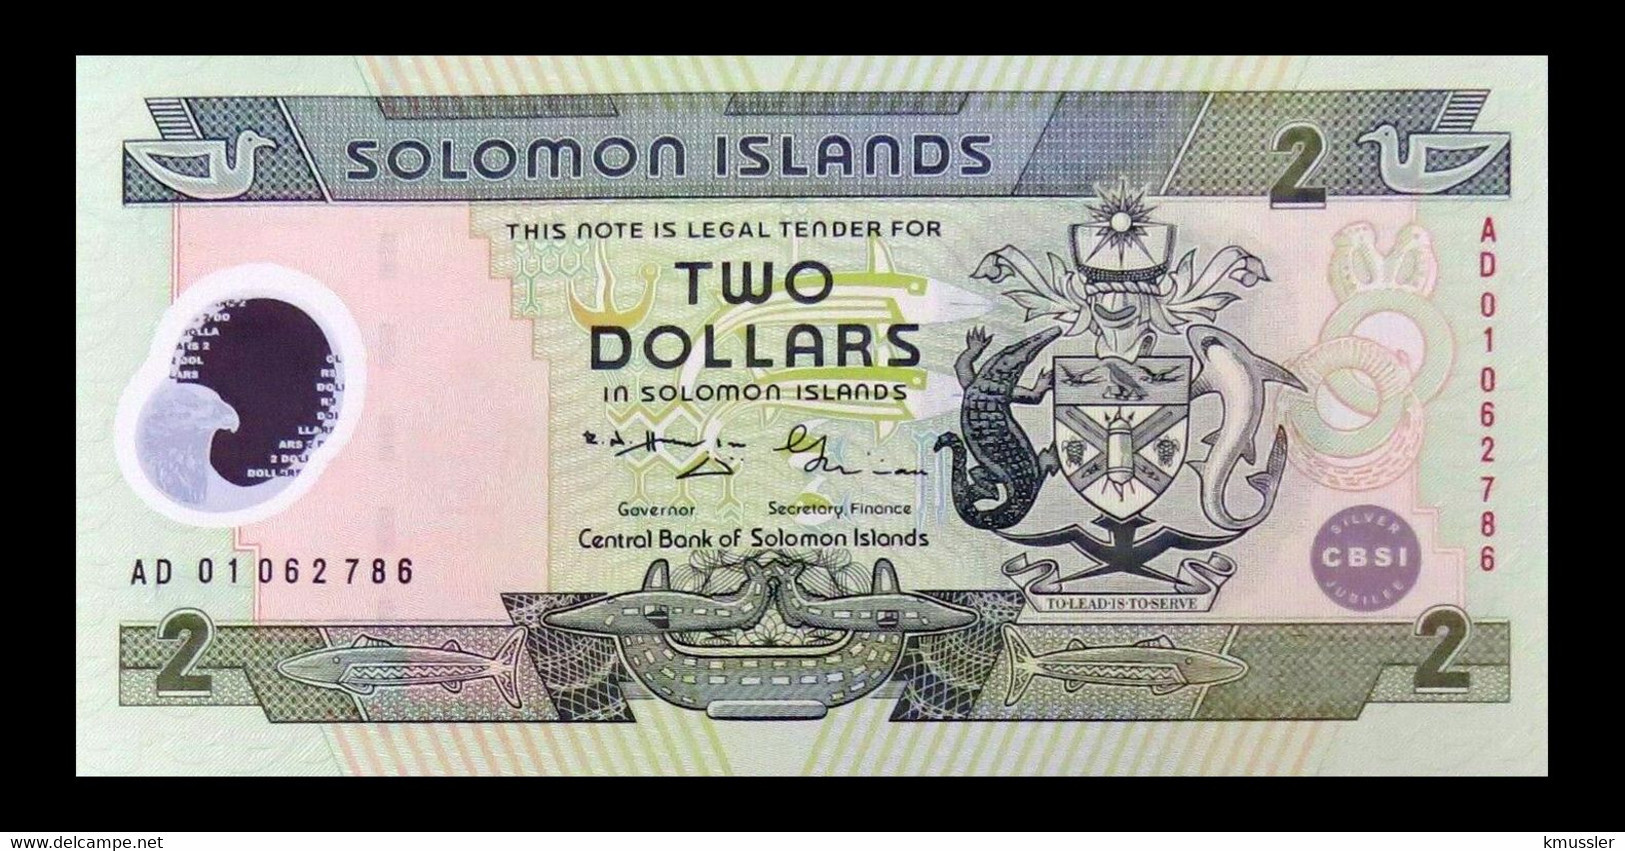 # # # Banknote Von Den Solomon-Inseln 2 Dollars UNC # # # - Solomonen